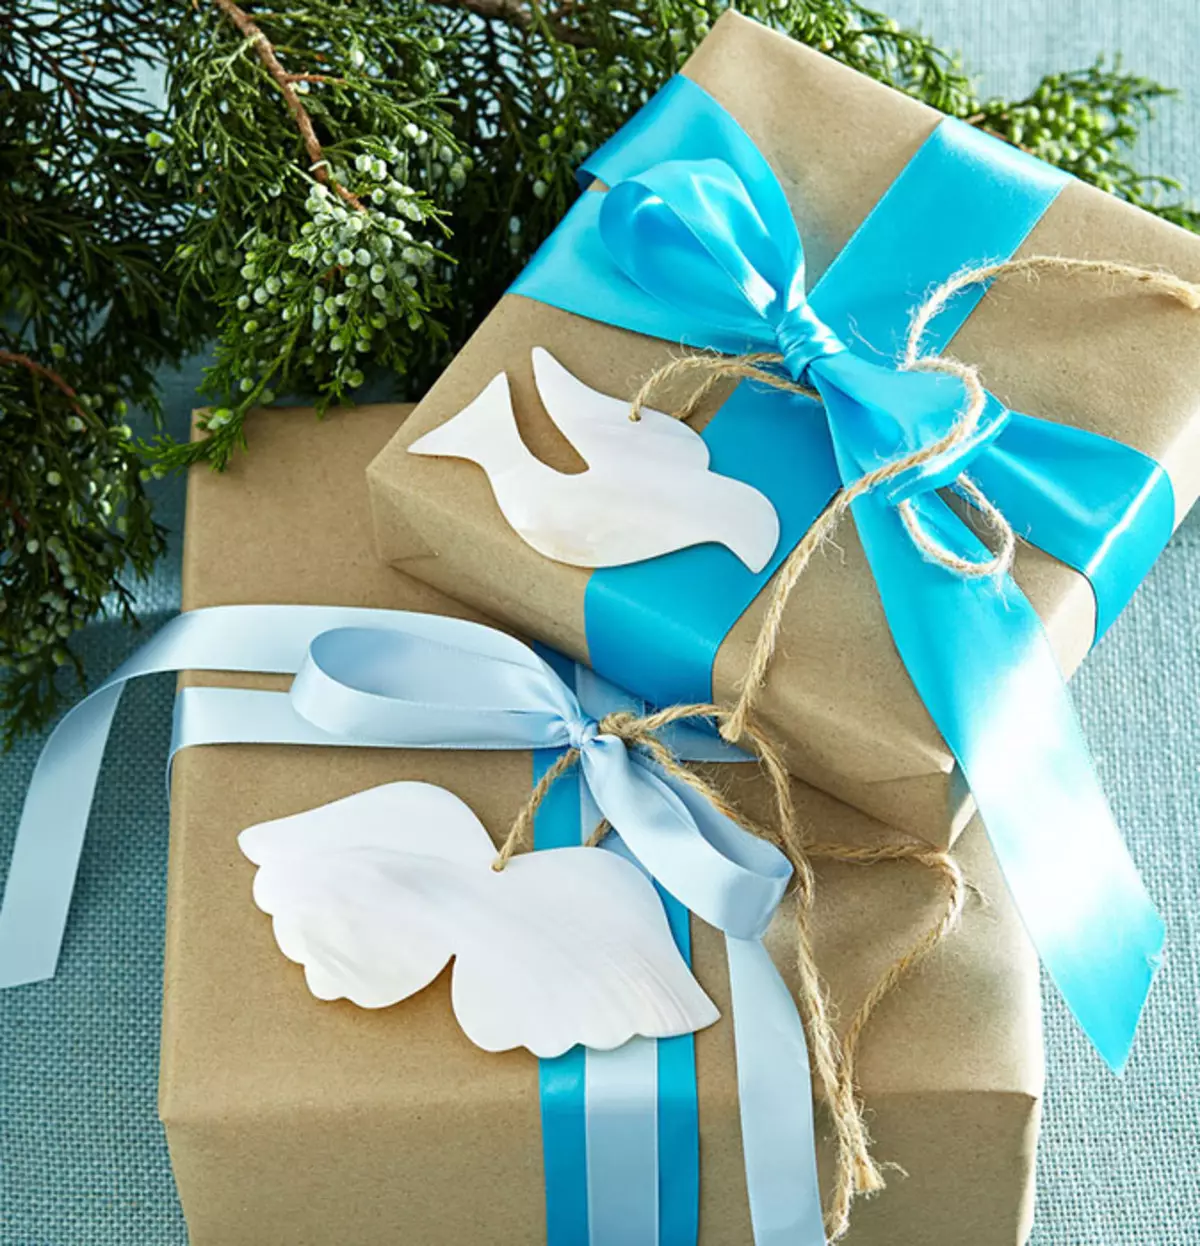 Подарок синий цвет. Подарок голубой. Подарки и упаковка. Подарки в голубых тонах. Идеи упаковки подарков своими руками.